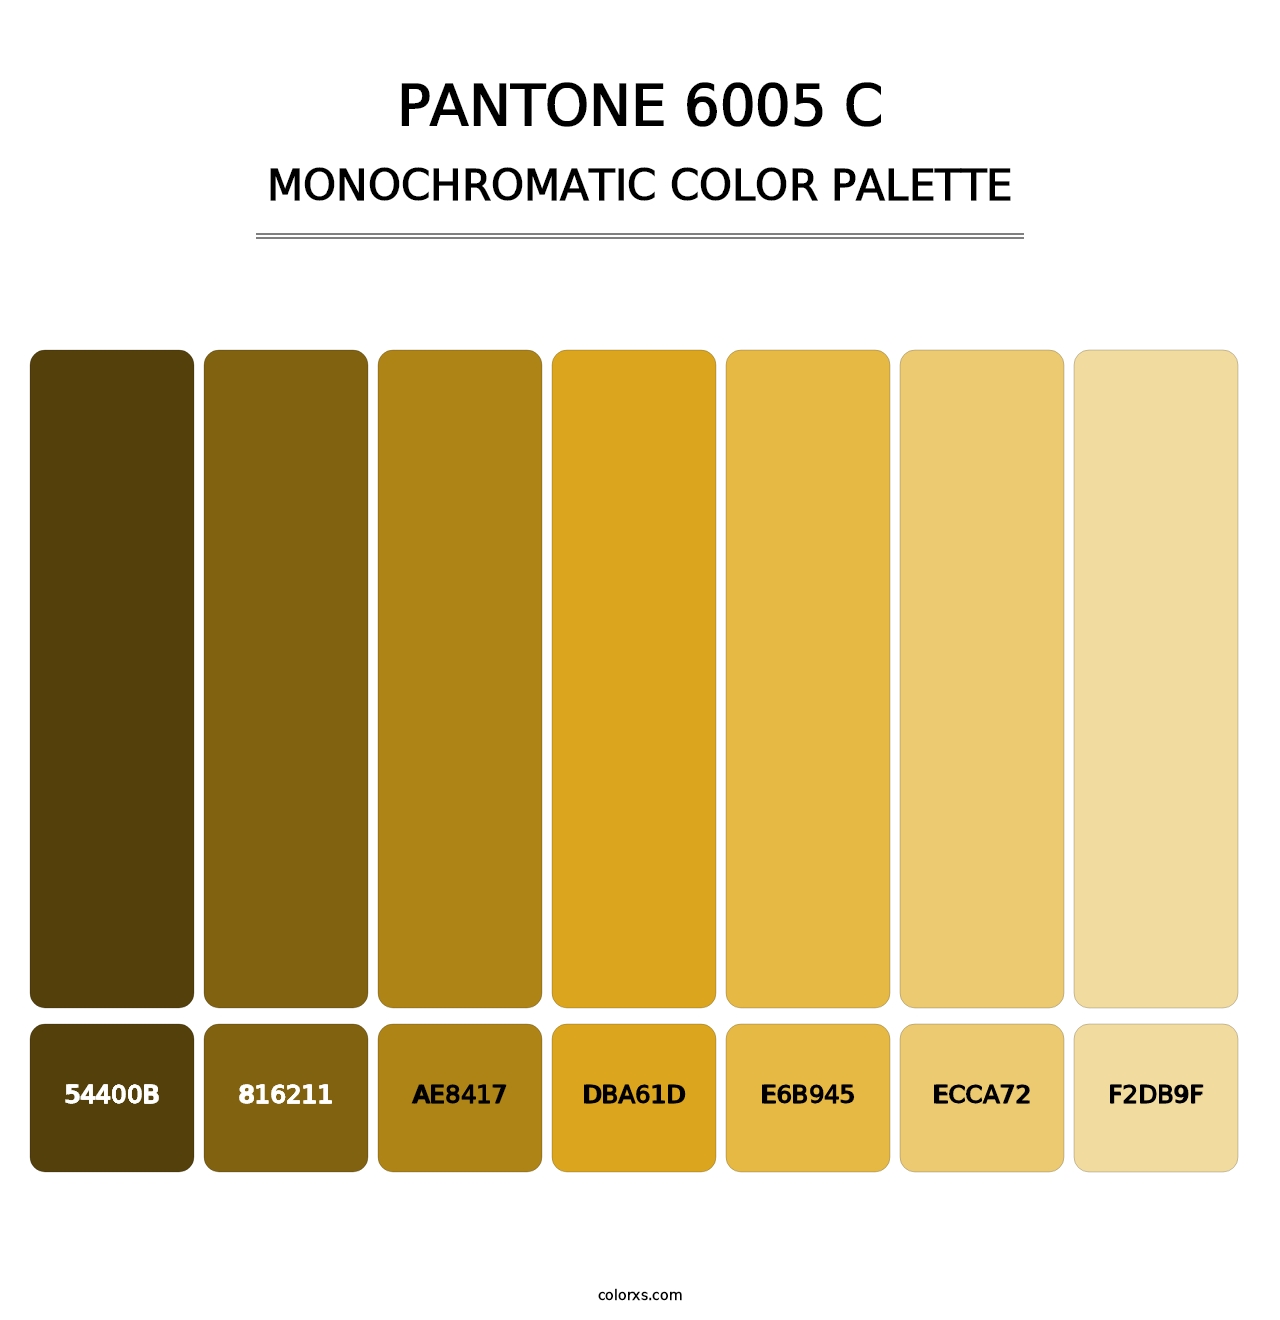 PANTONE 6005 C - Monochromatic Color Palette